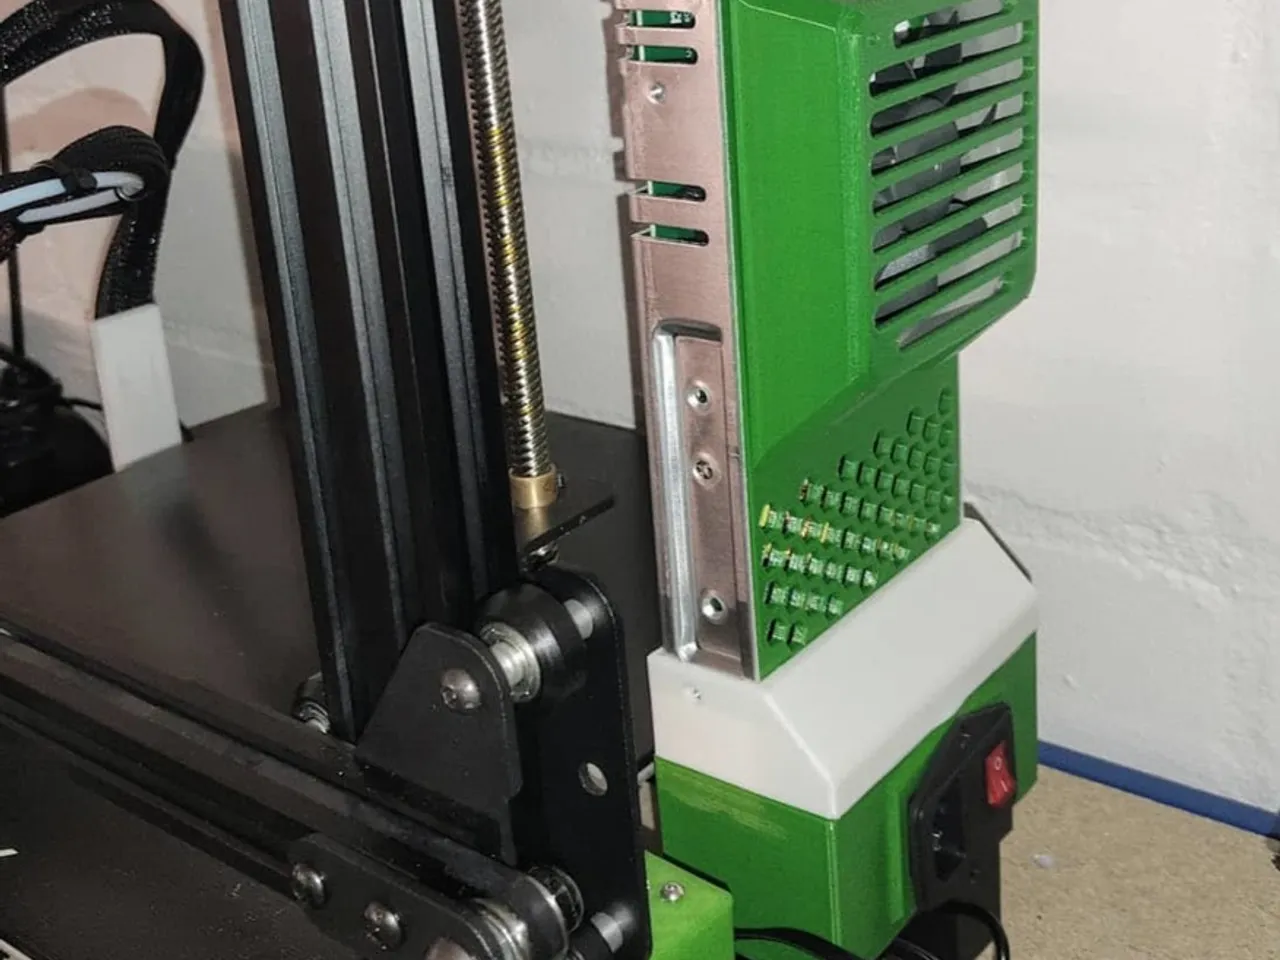 SUNLU 3D Printer Power Supply